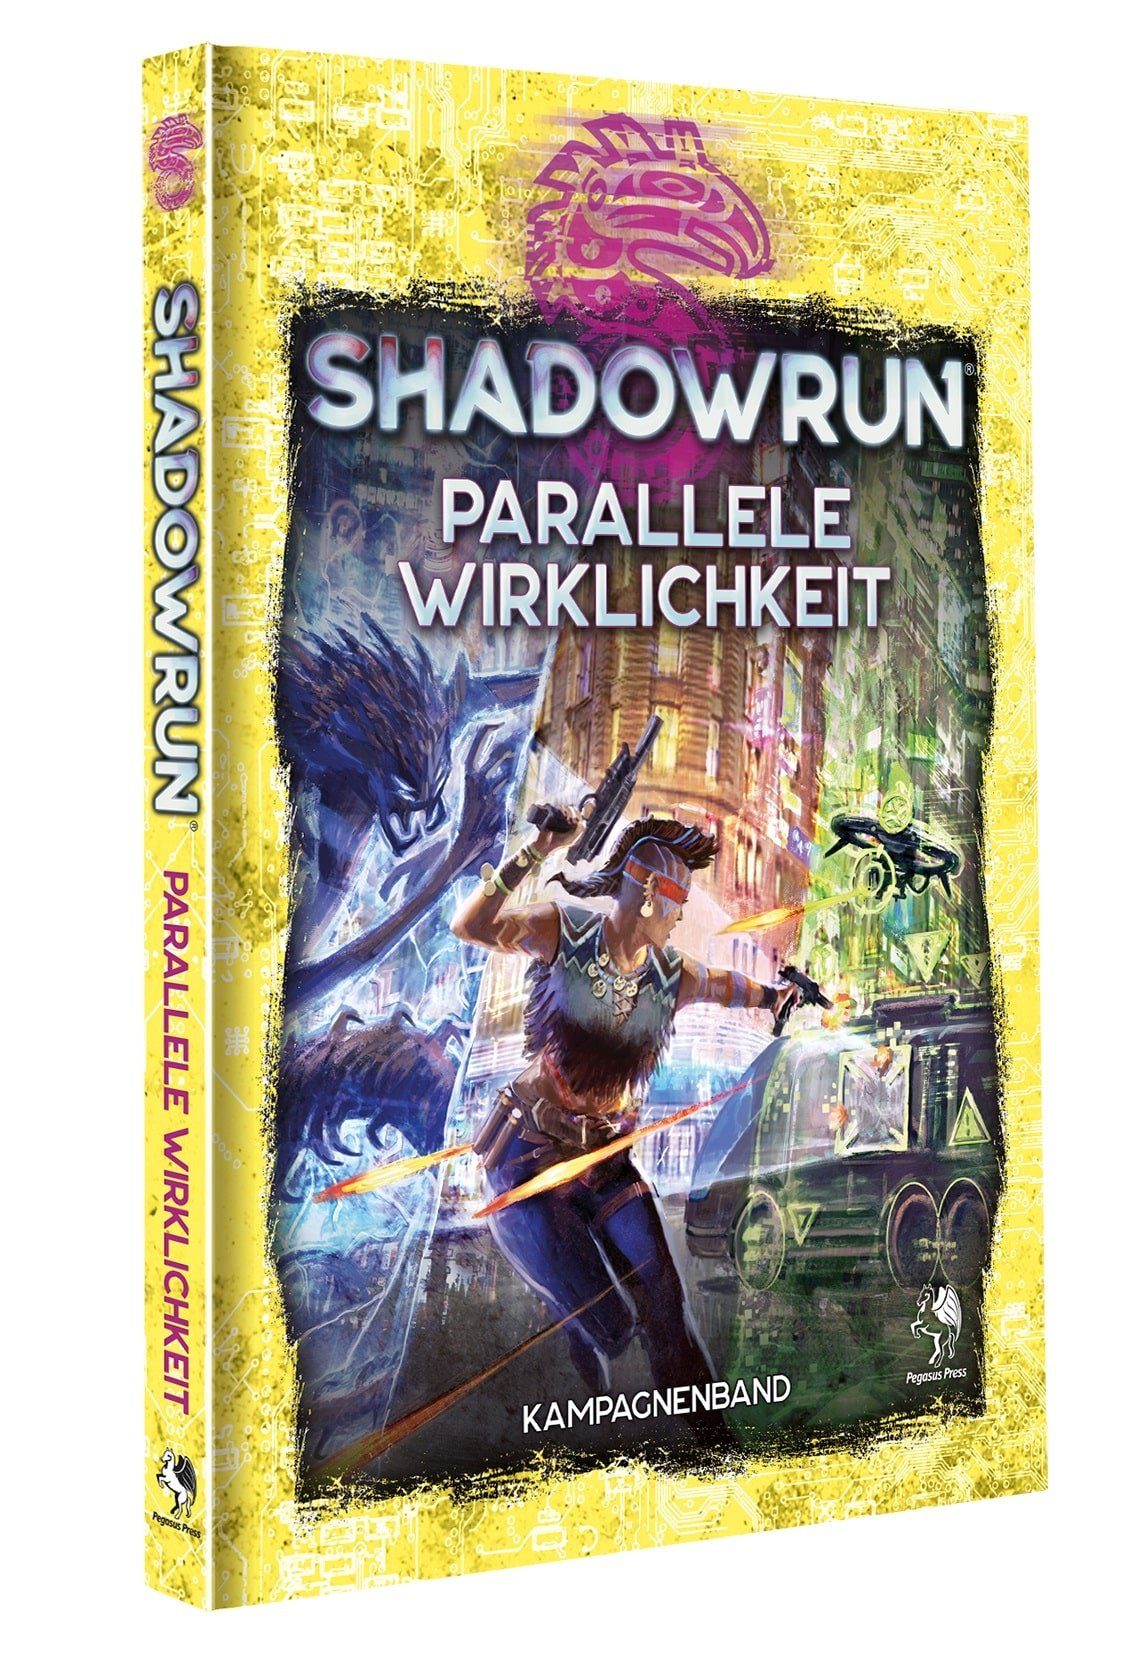 Shadowrun: Wirklichkeit Spiele (Hardcover) Pegasus Spiel, Parallele